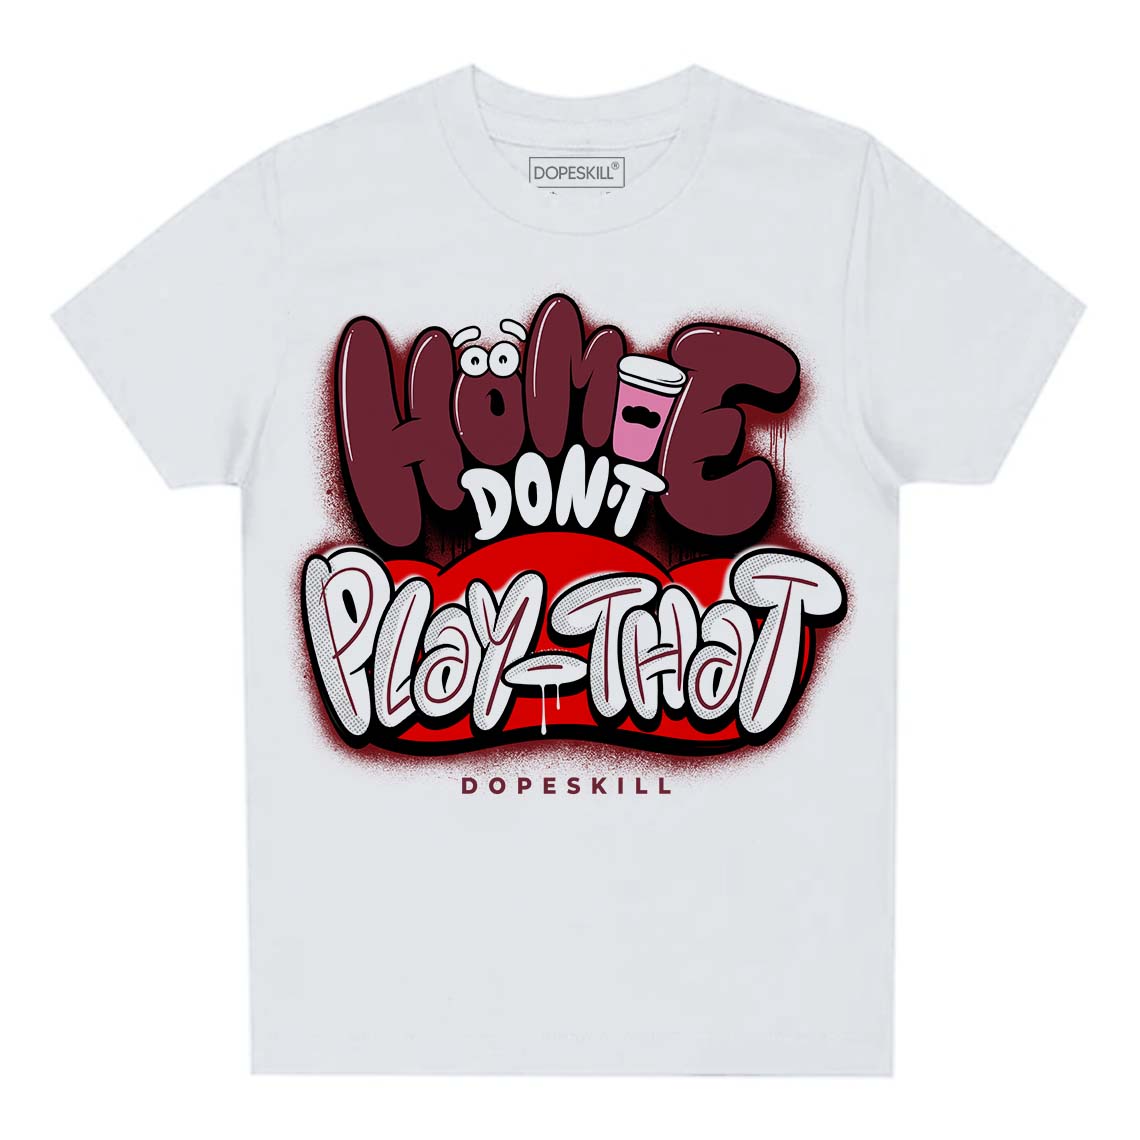 Jordan 1 Retro High OG “Team Red” DopeSkill Toddler Kids T-shirt Homie Don't Play That Graphic Streetwear - White